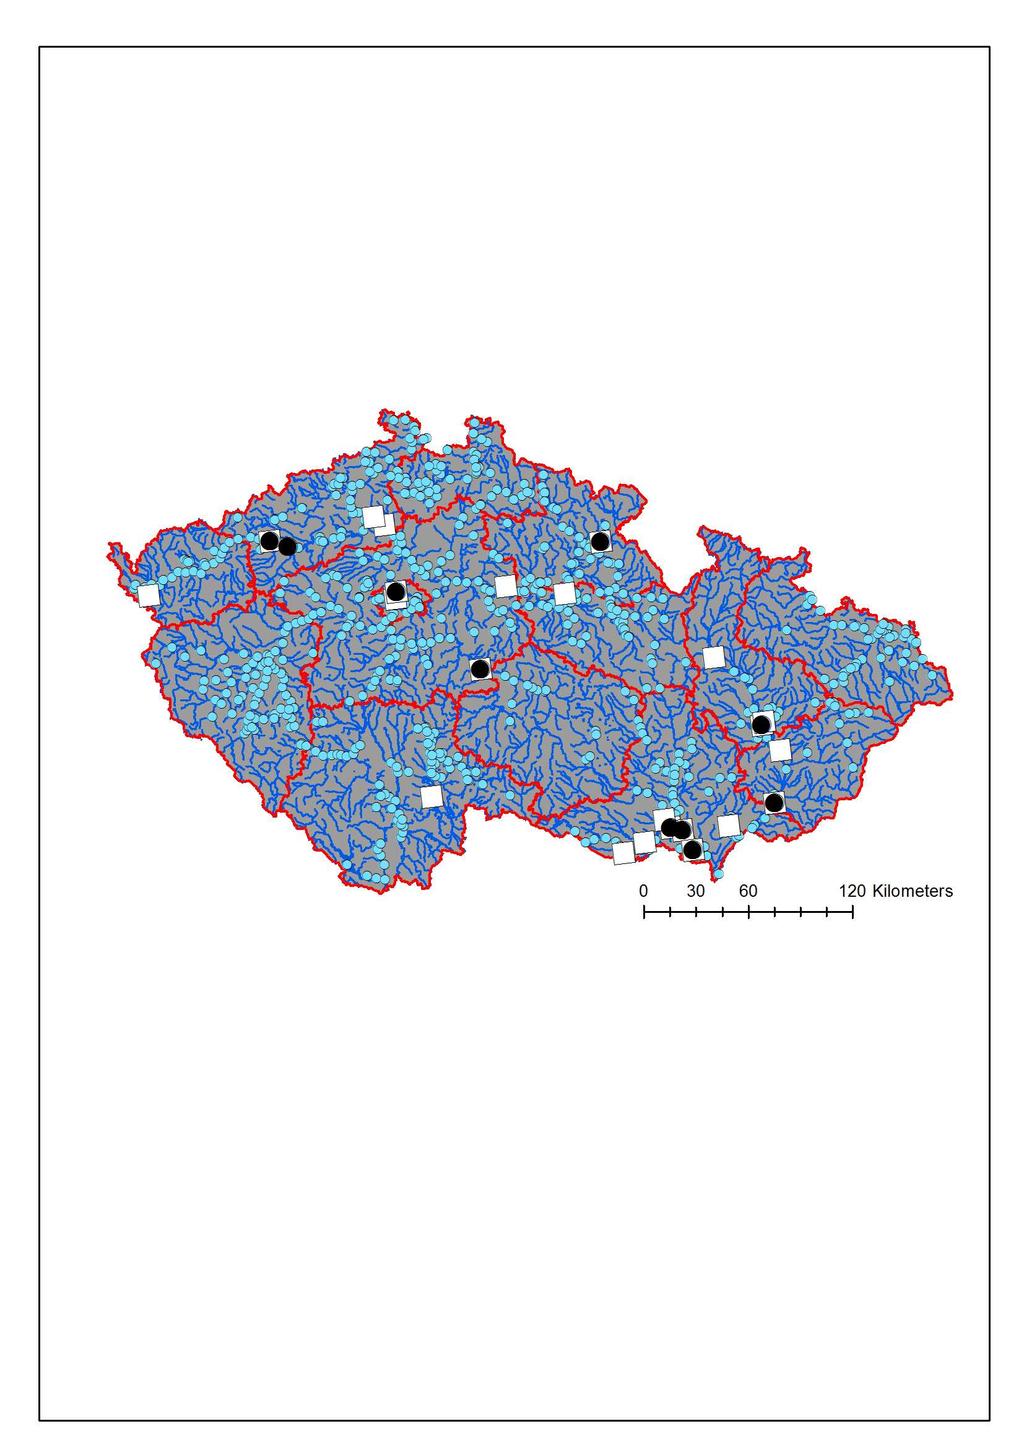 Obr. 2. Distribuce lokalit s nejvyšším počtem zjištěných druhů a jedinců vodních ptáků na území České republiky v lednu 2012. Velké černé kroužky představují lokality s 15 a více druhy.